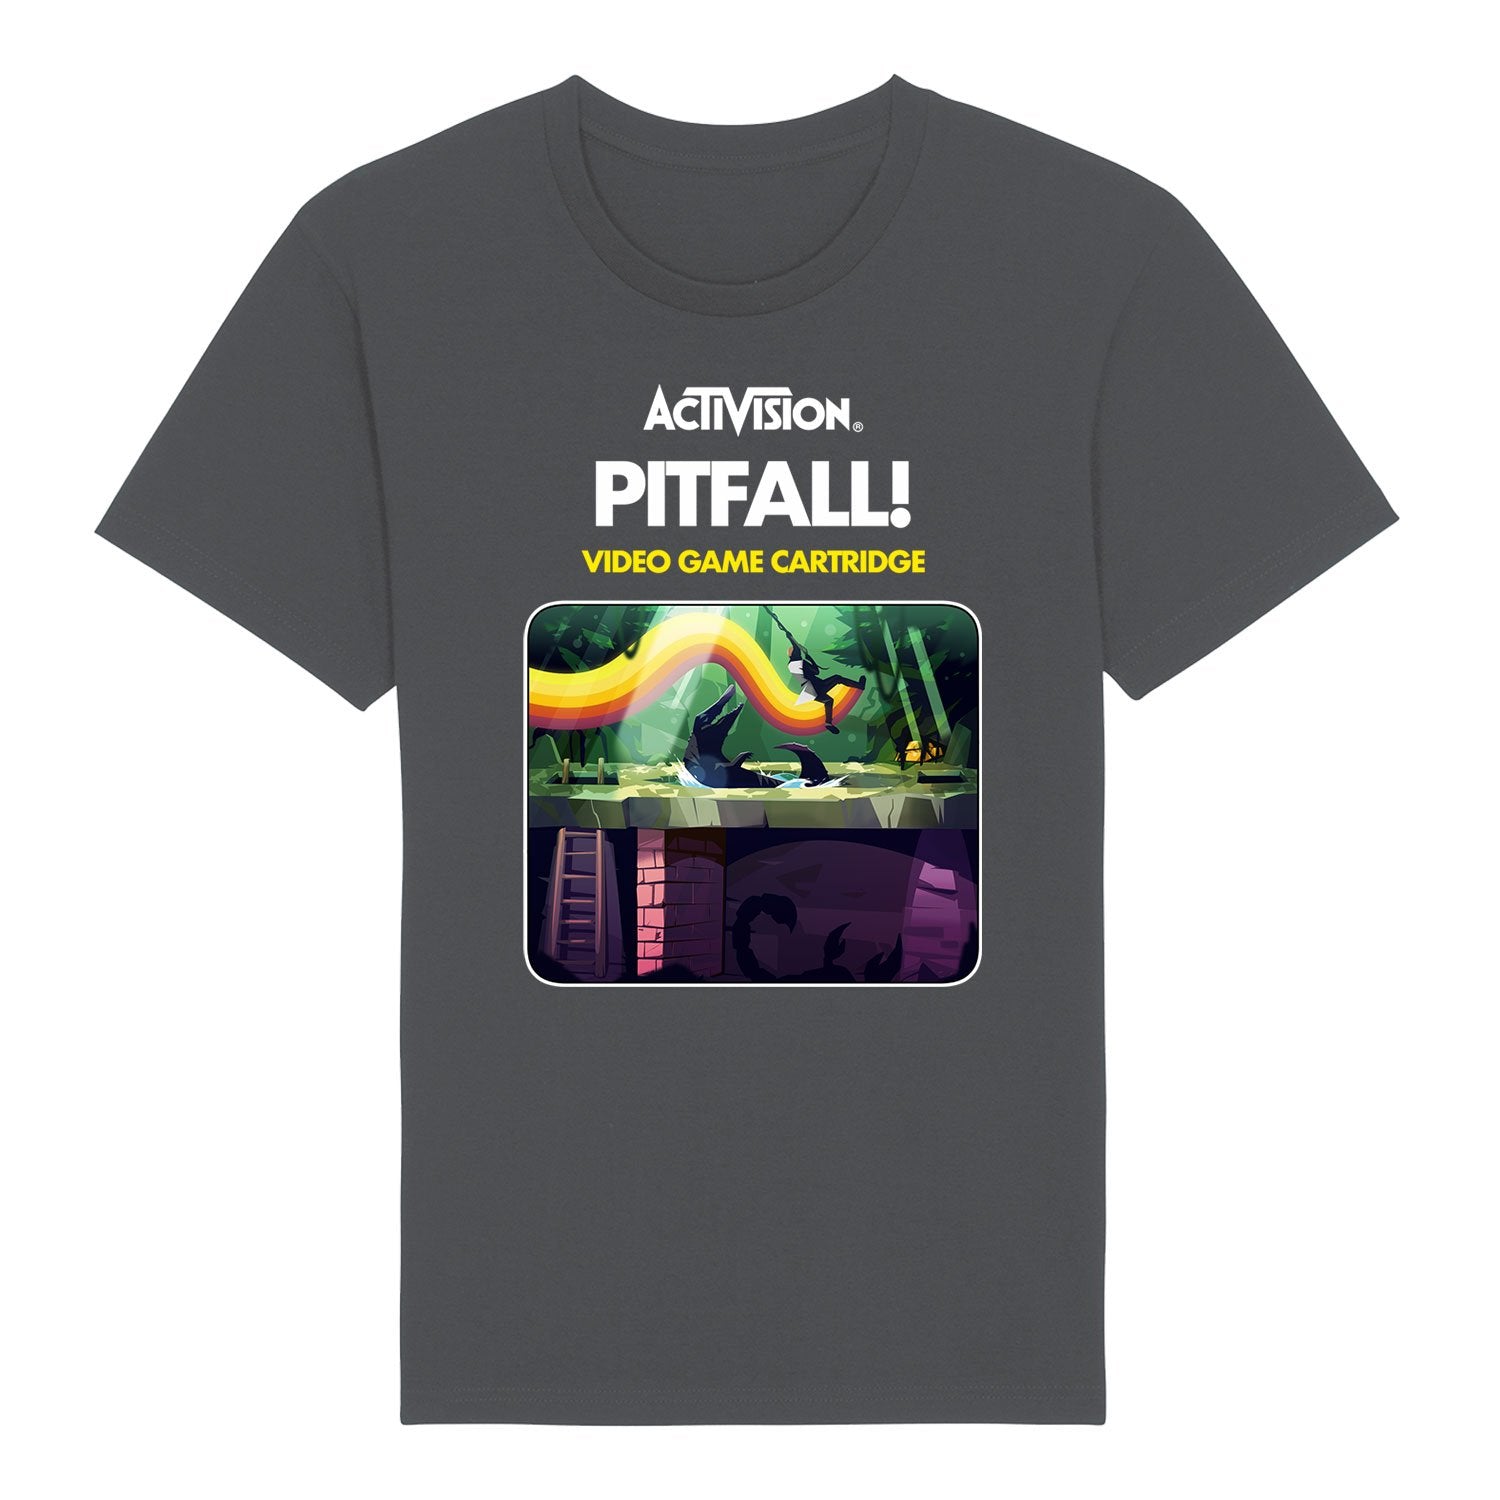 Pitfall! Men's T-Shirt, Game Cartridge Design on Grey Unisex Tee